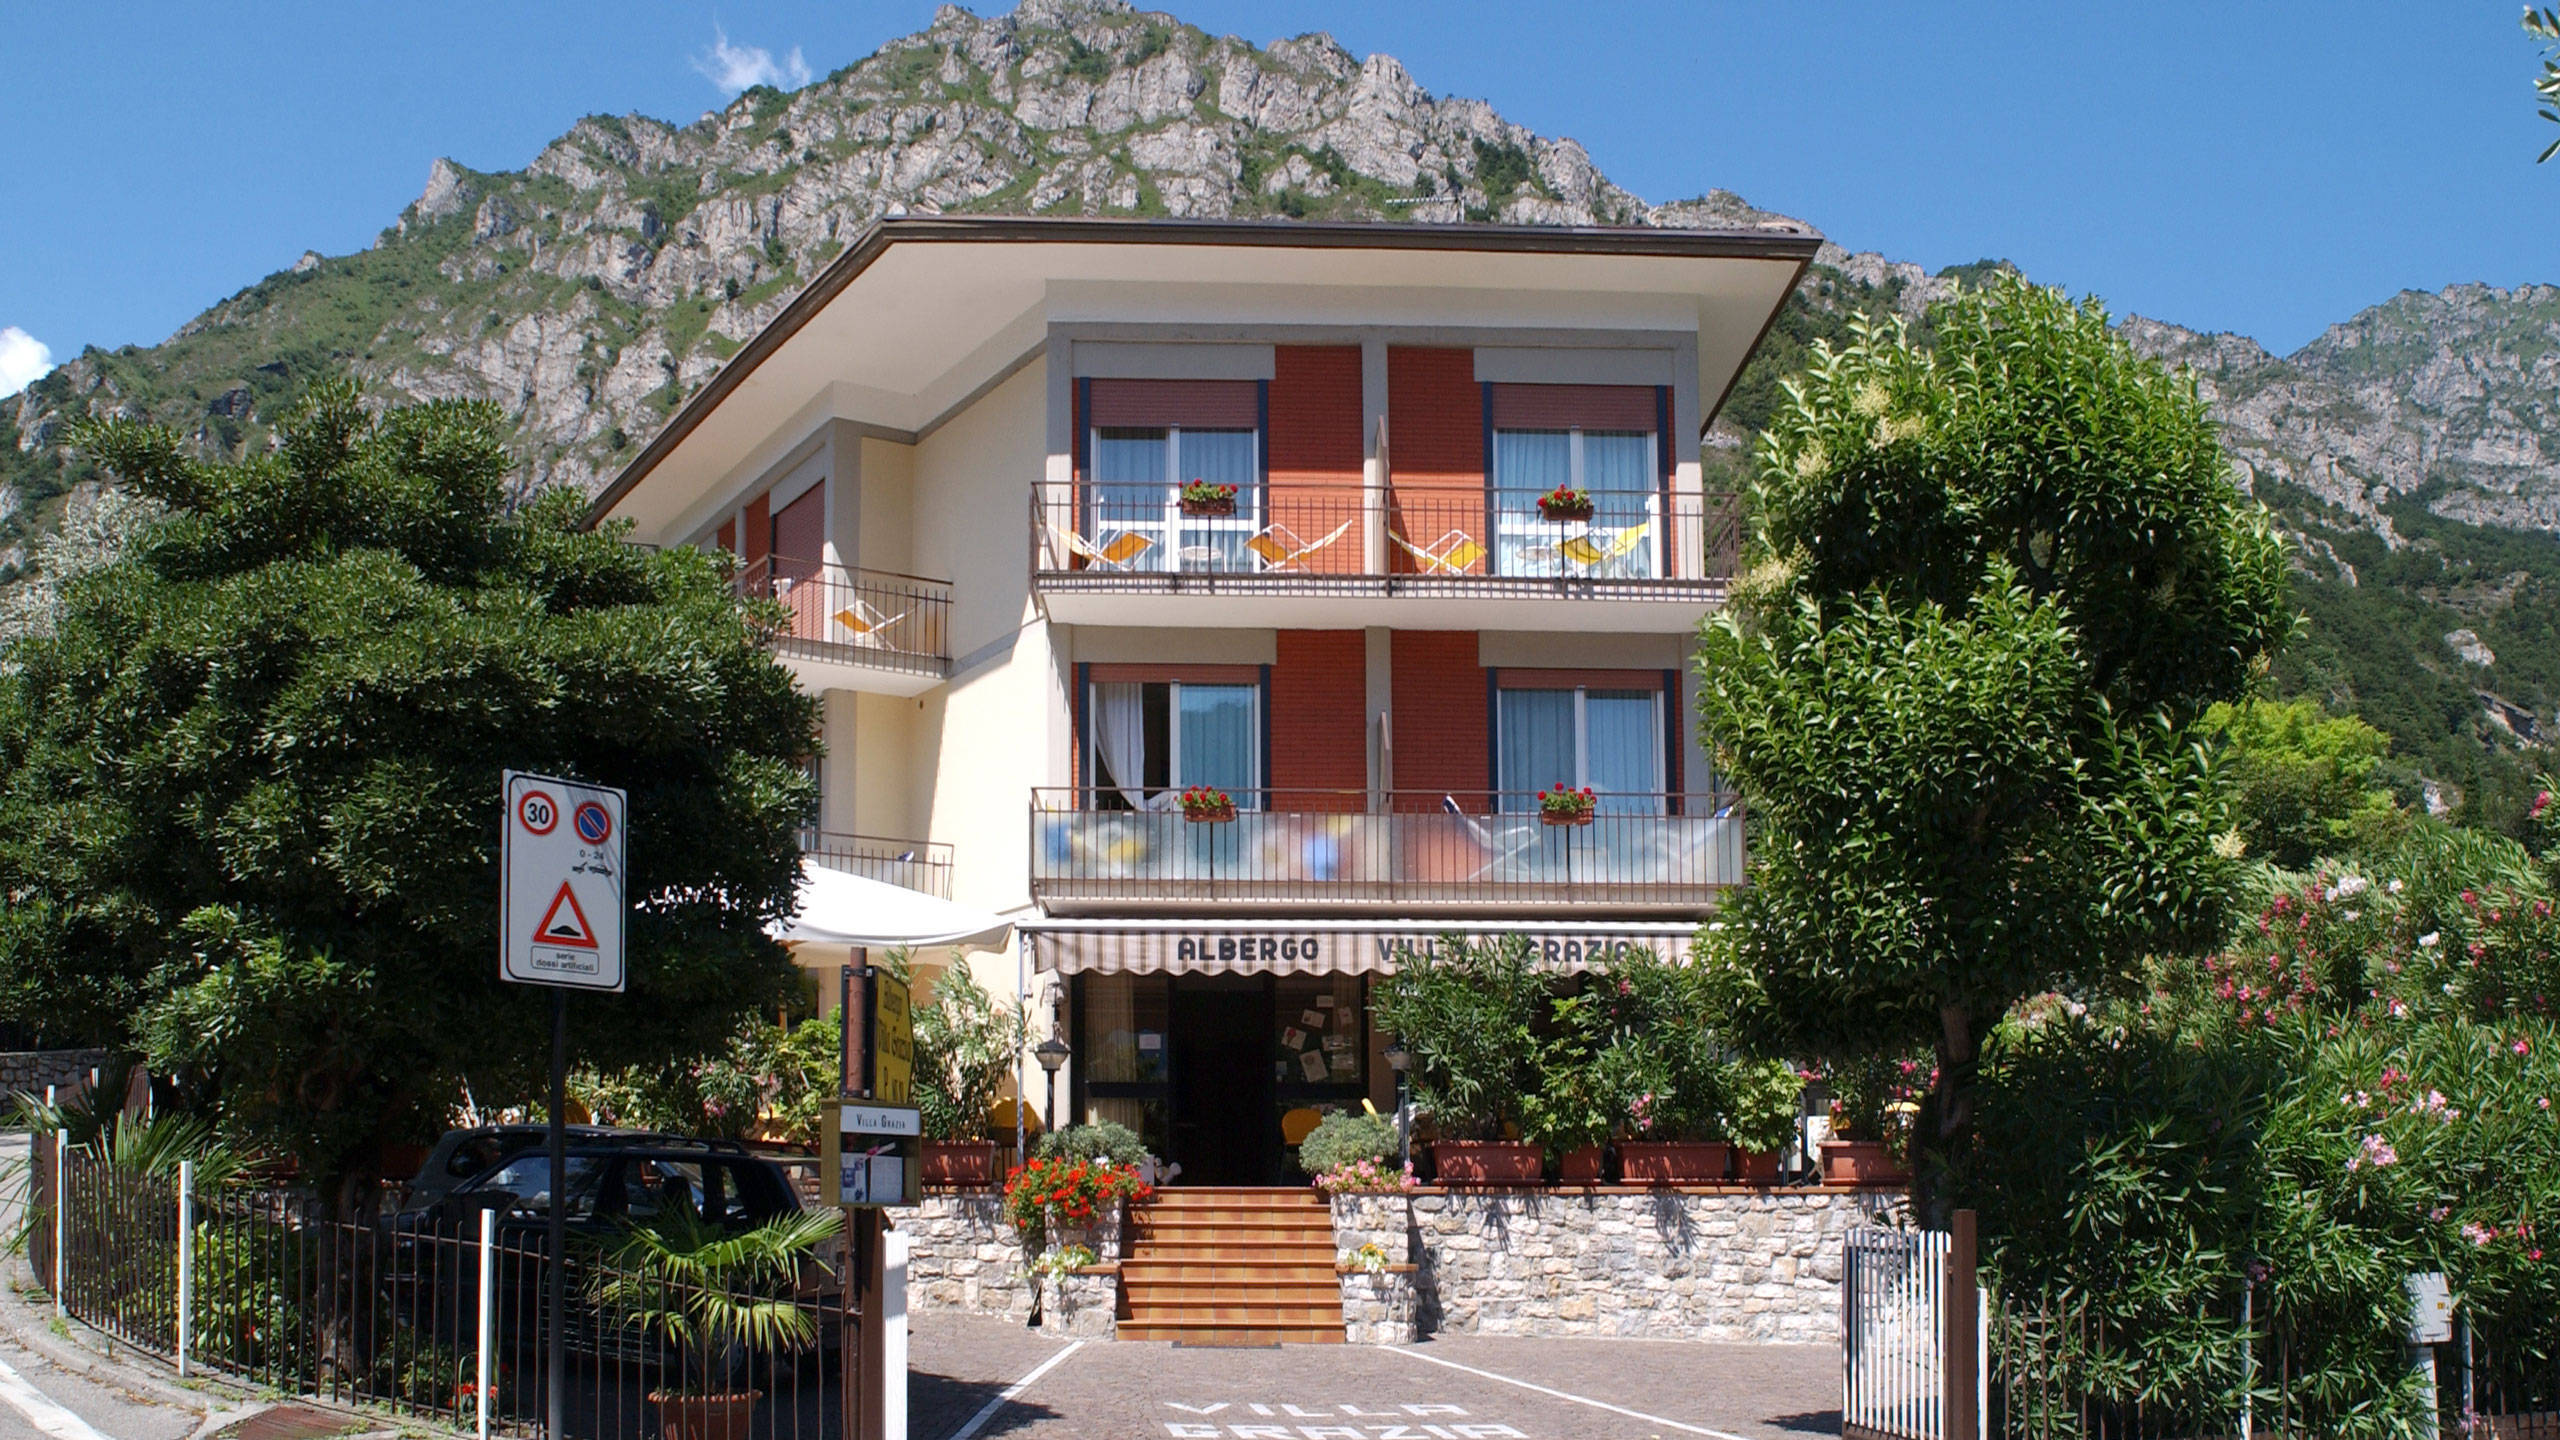 Hotel Villa Grazia - 2-Sterne-Economy-Hotel in Limone sul Garda - Urlaub am Gardasee - Brescia - Italien